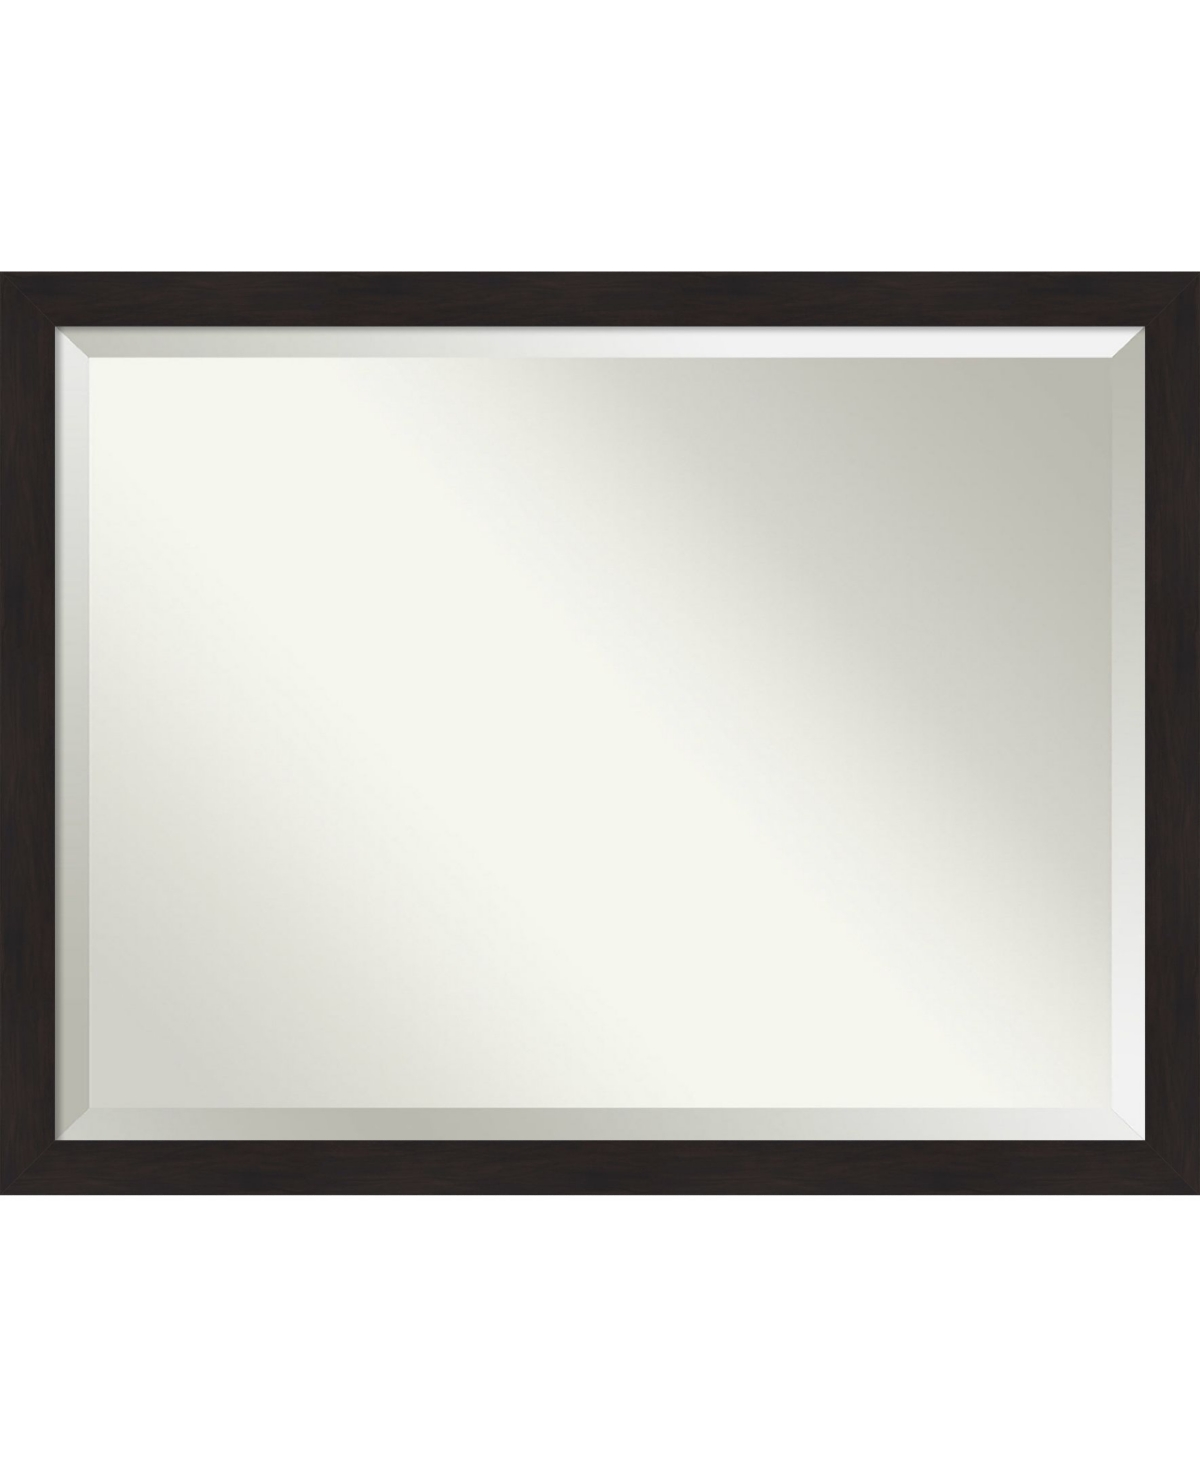 Furniture Framed Bathroom Vanity Wall Mirror, 43.5" x 33.50" - Dark Brown